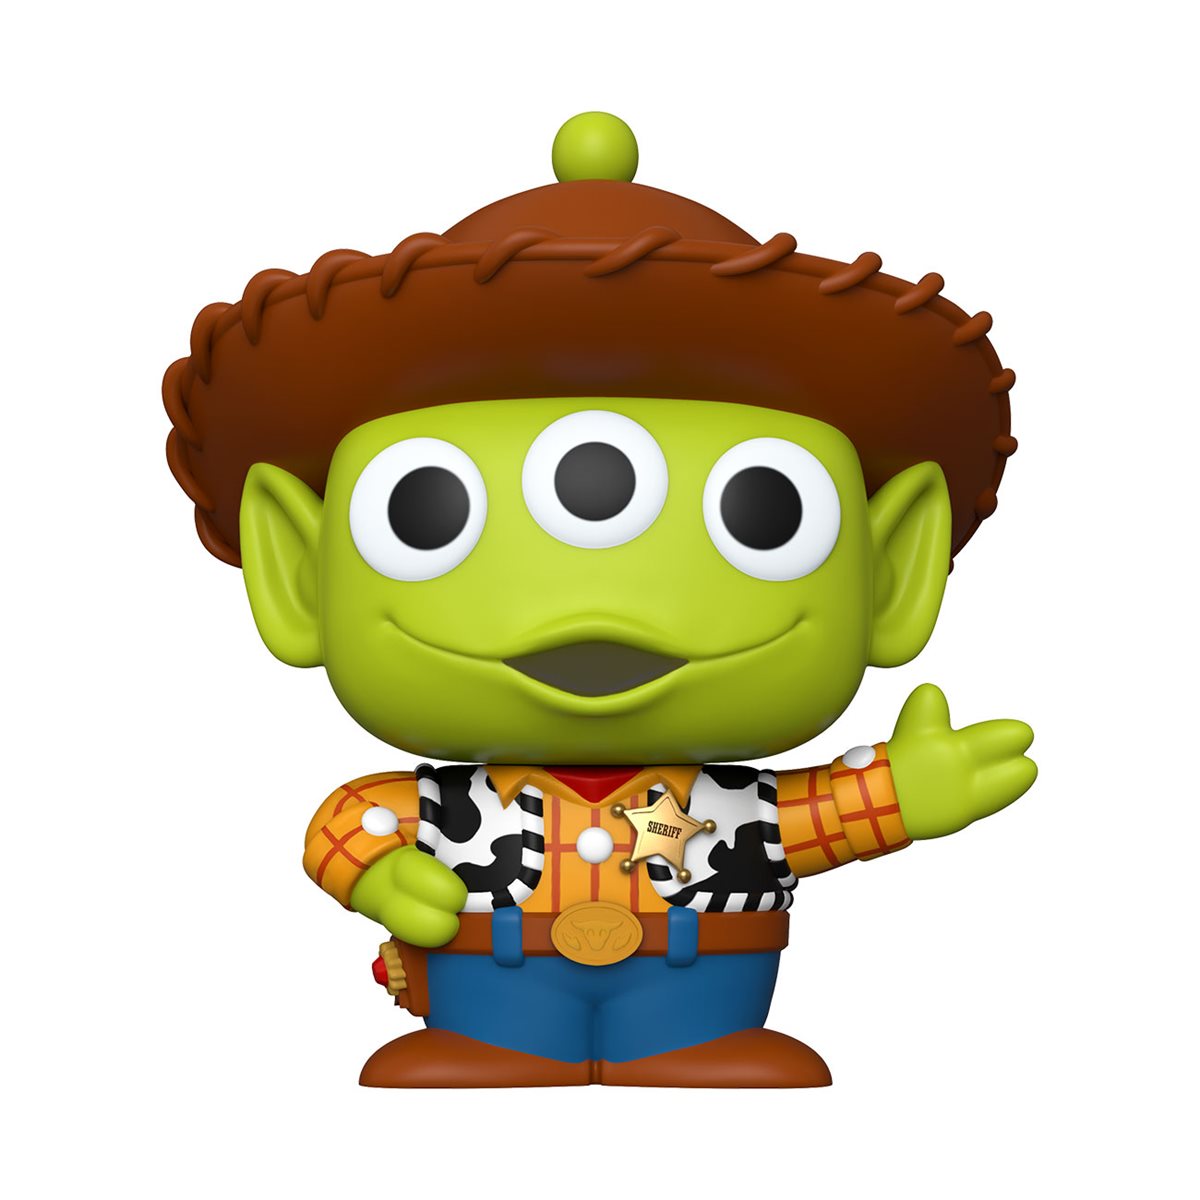 Funko Pop! Disney Toy Story Woody (Alien) 10 Inch Figure #756 - US